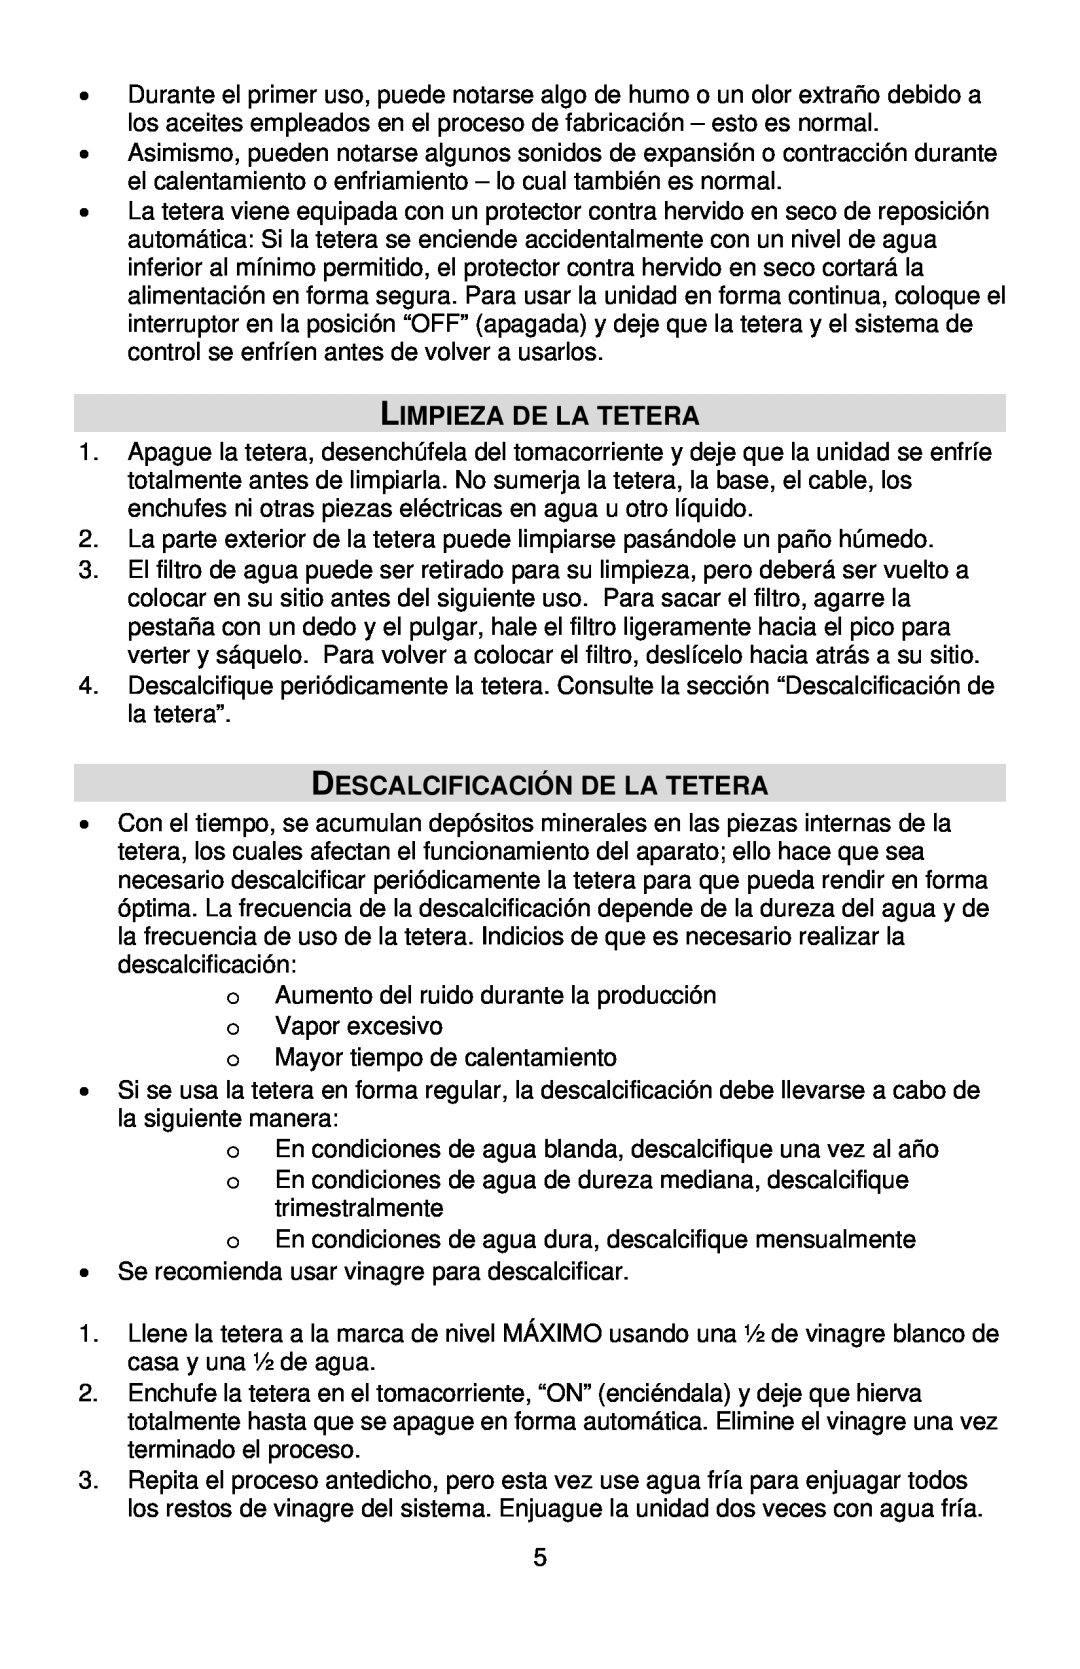 West Bend Kettle instruction manual Limpieza De La Tetera, Descalcificación De La Tetera 